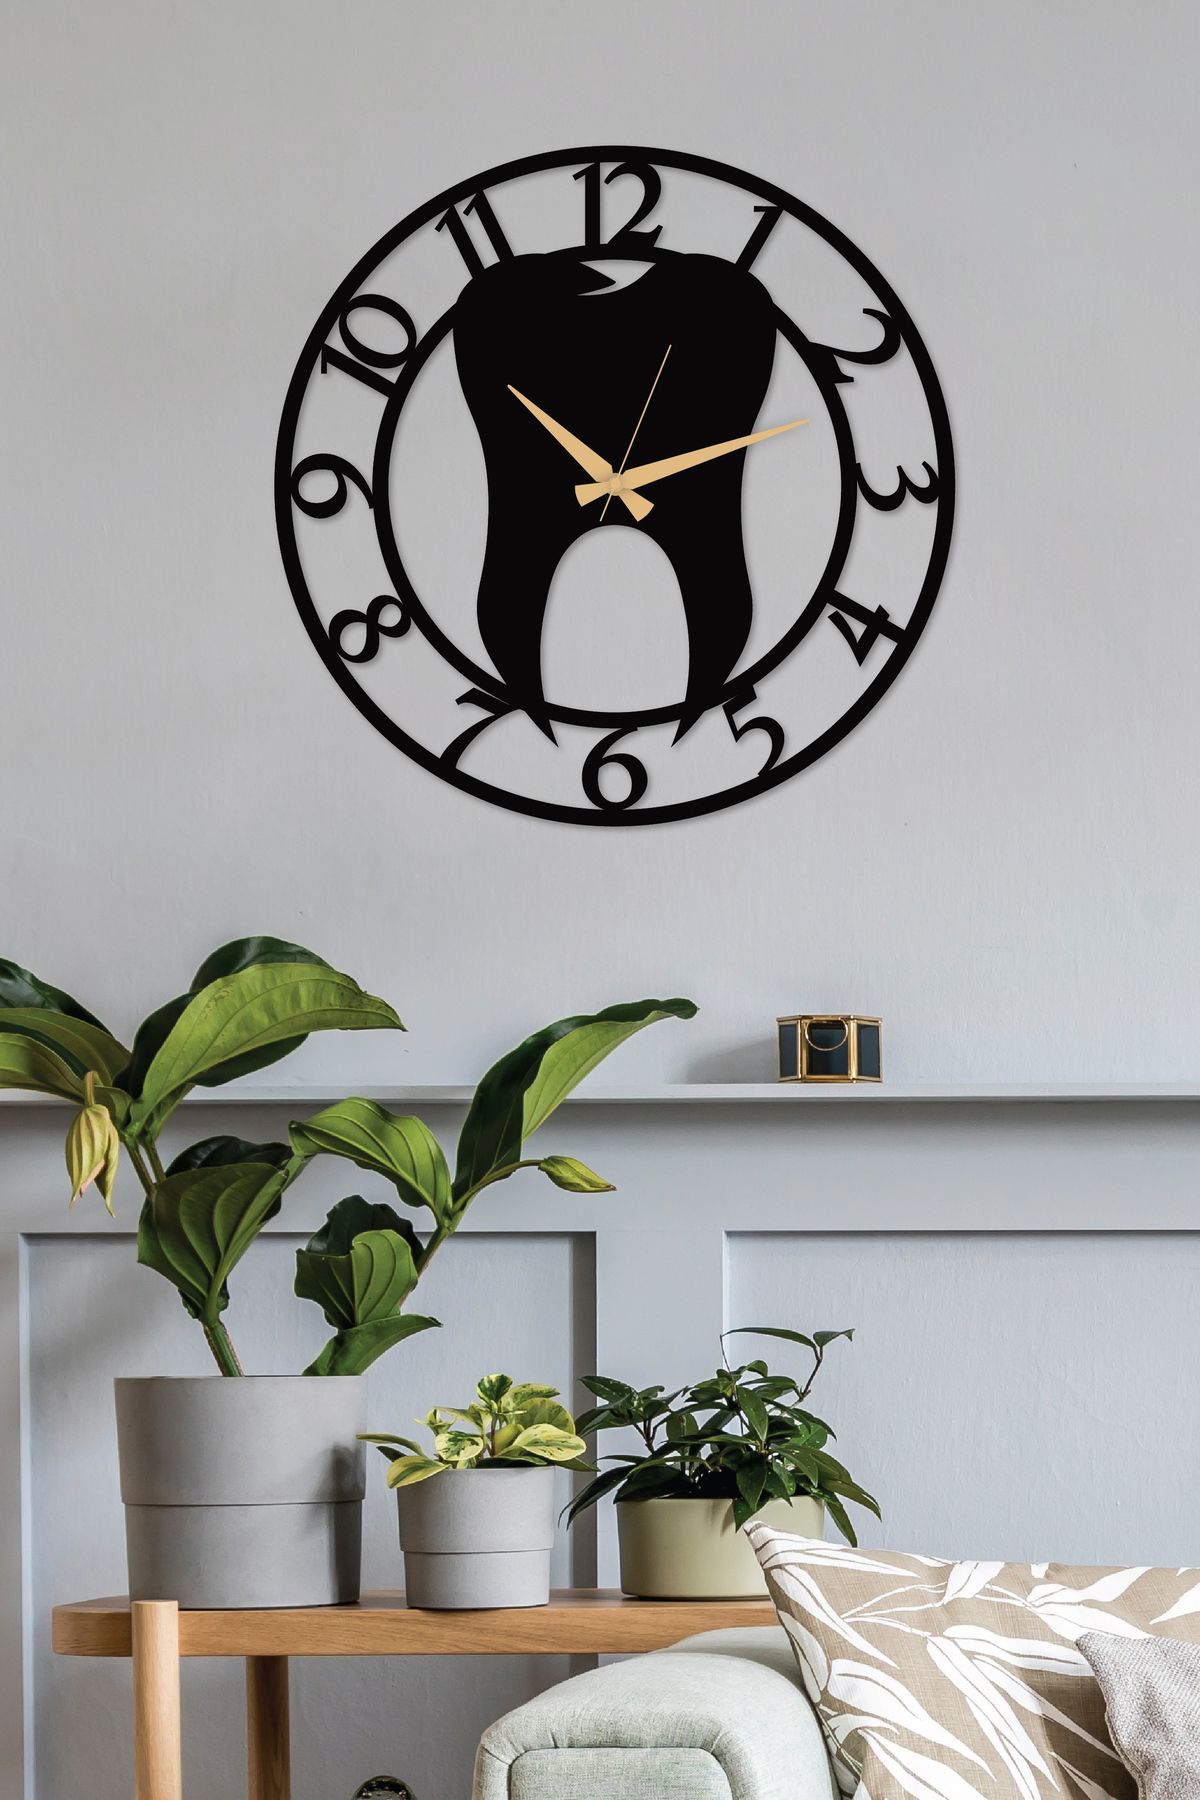 Gowpenart Dentist металлические черные настенные часы с цифрами - Часы для дома/офиса - Подарочные часы - 50 x 50 см DisHekimiRakDS50